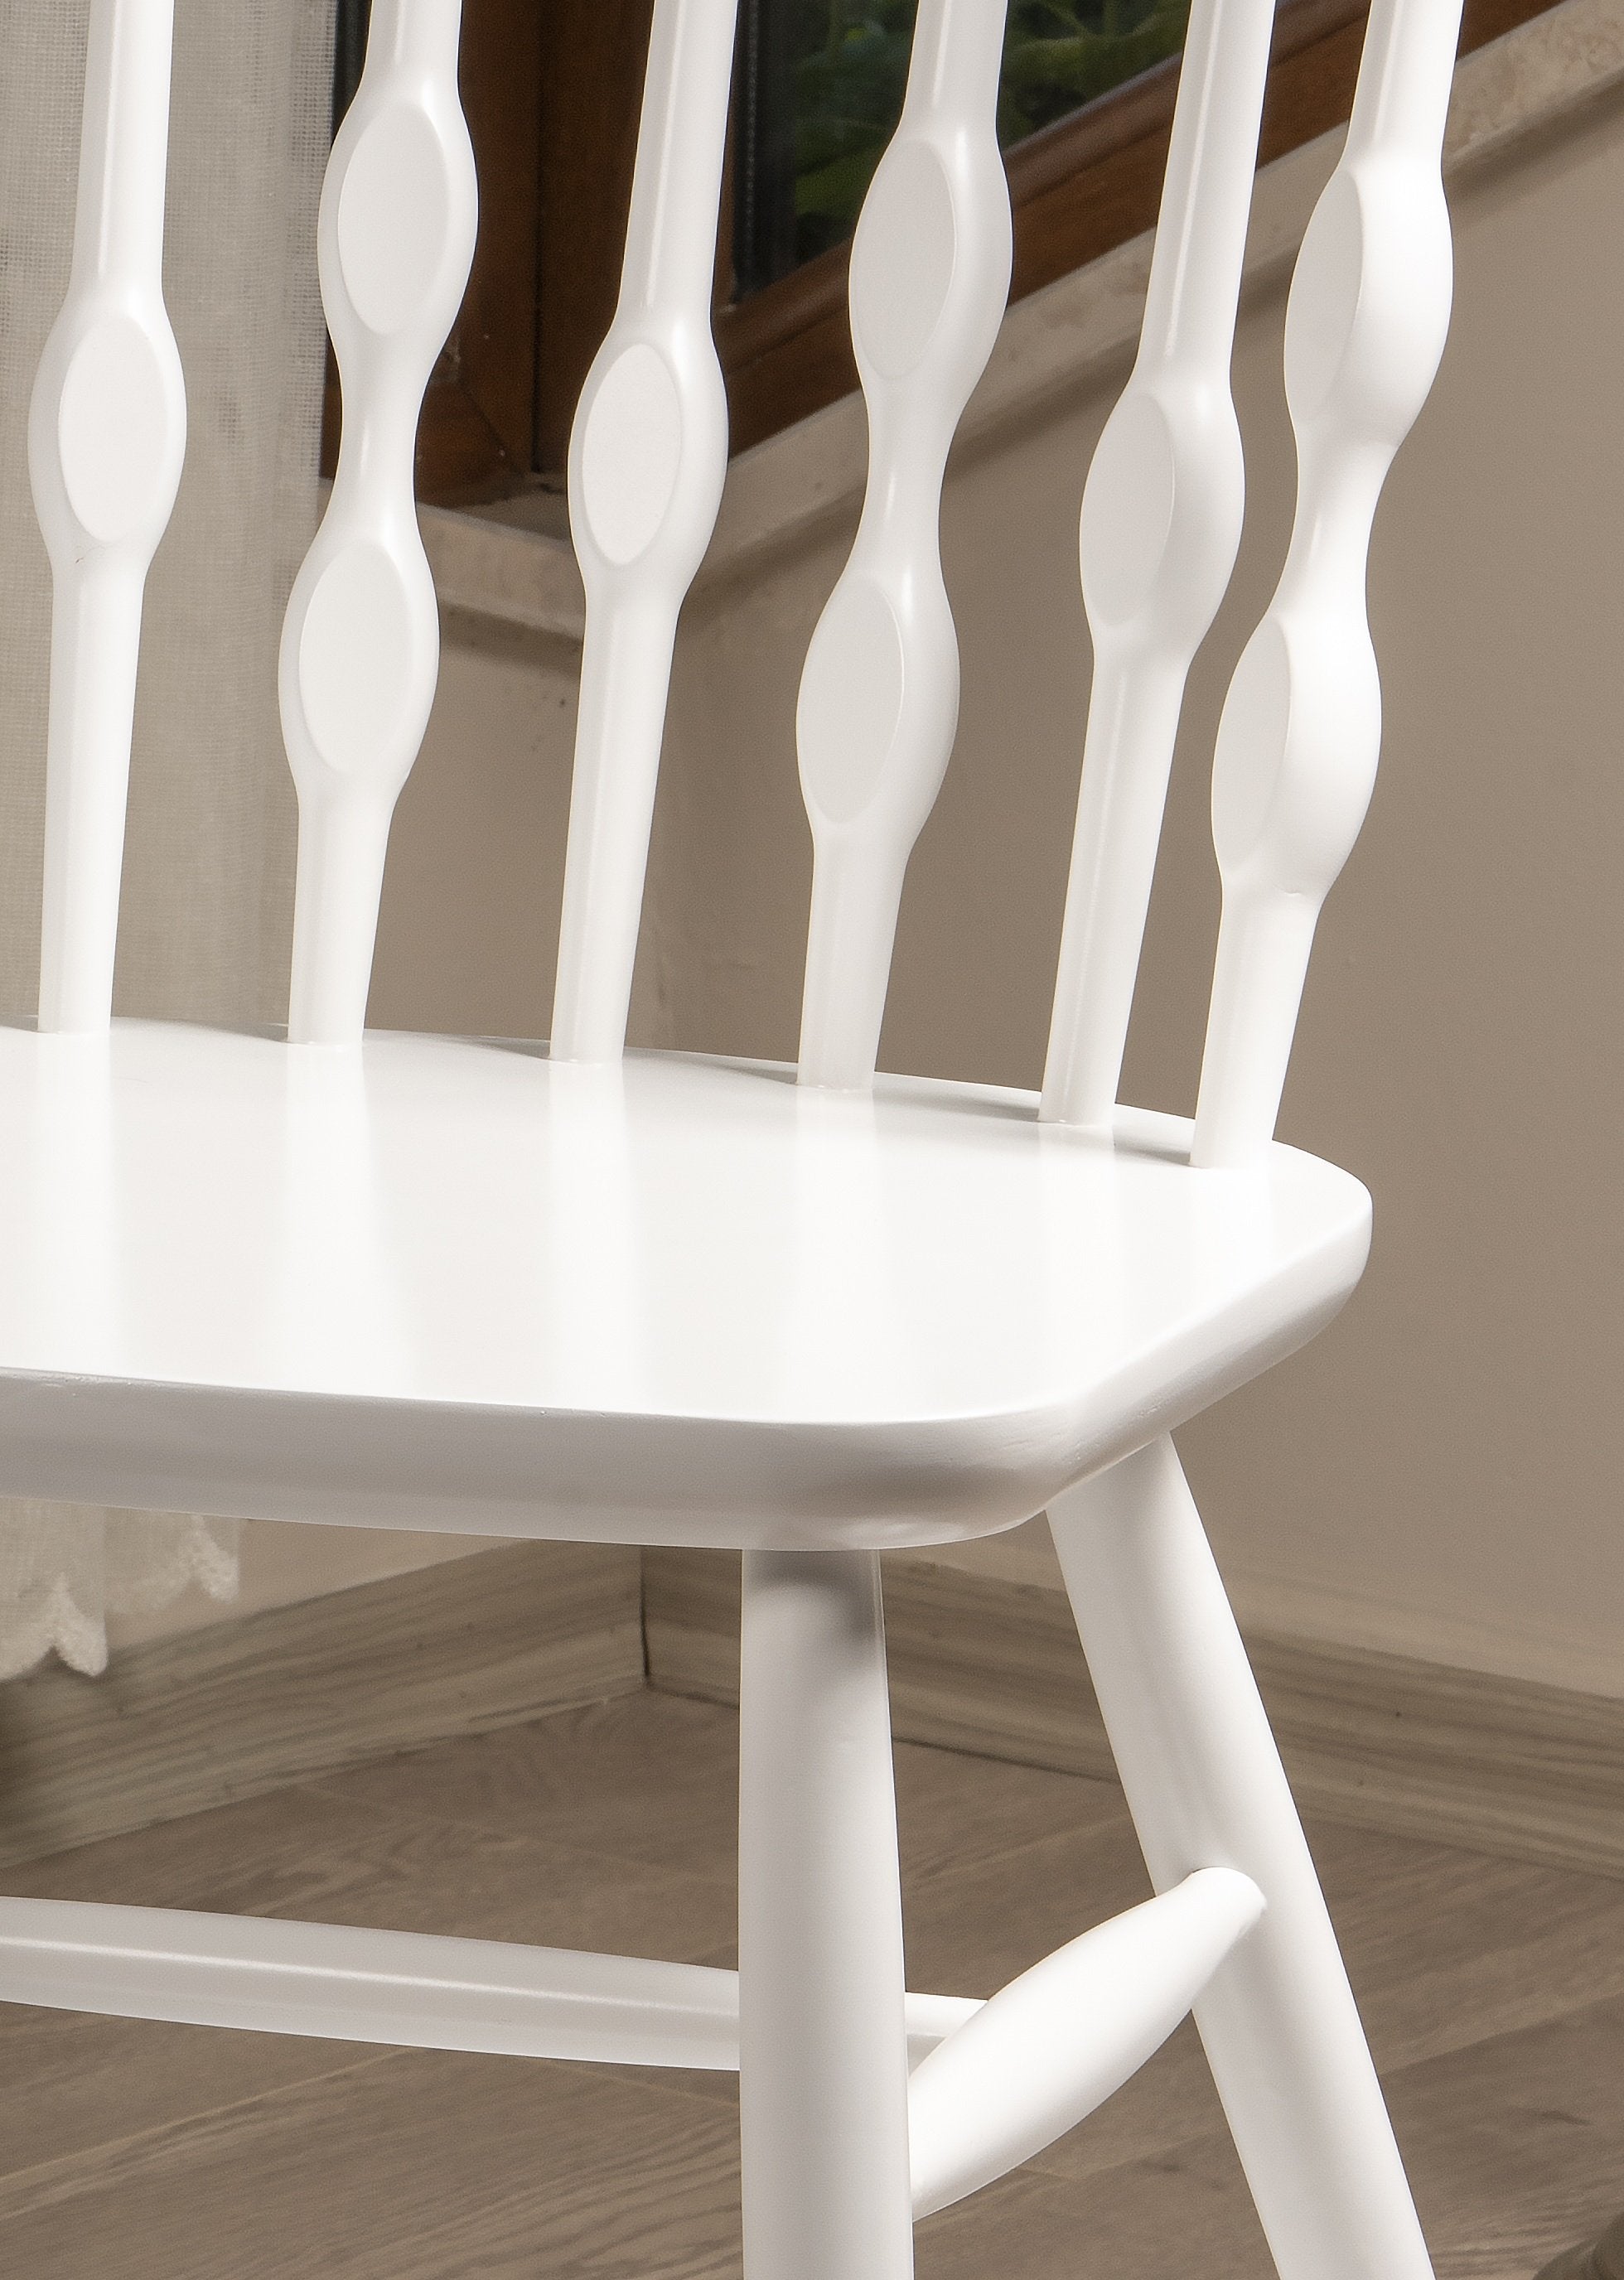 Bonjuk Solid Wood Chair - Set of 2 - 33.4" H x 16.5" W x 18.9" D - Decorotika